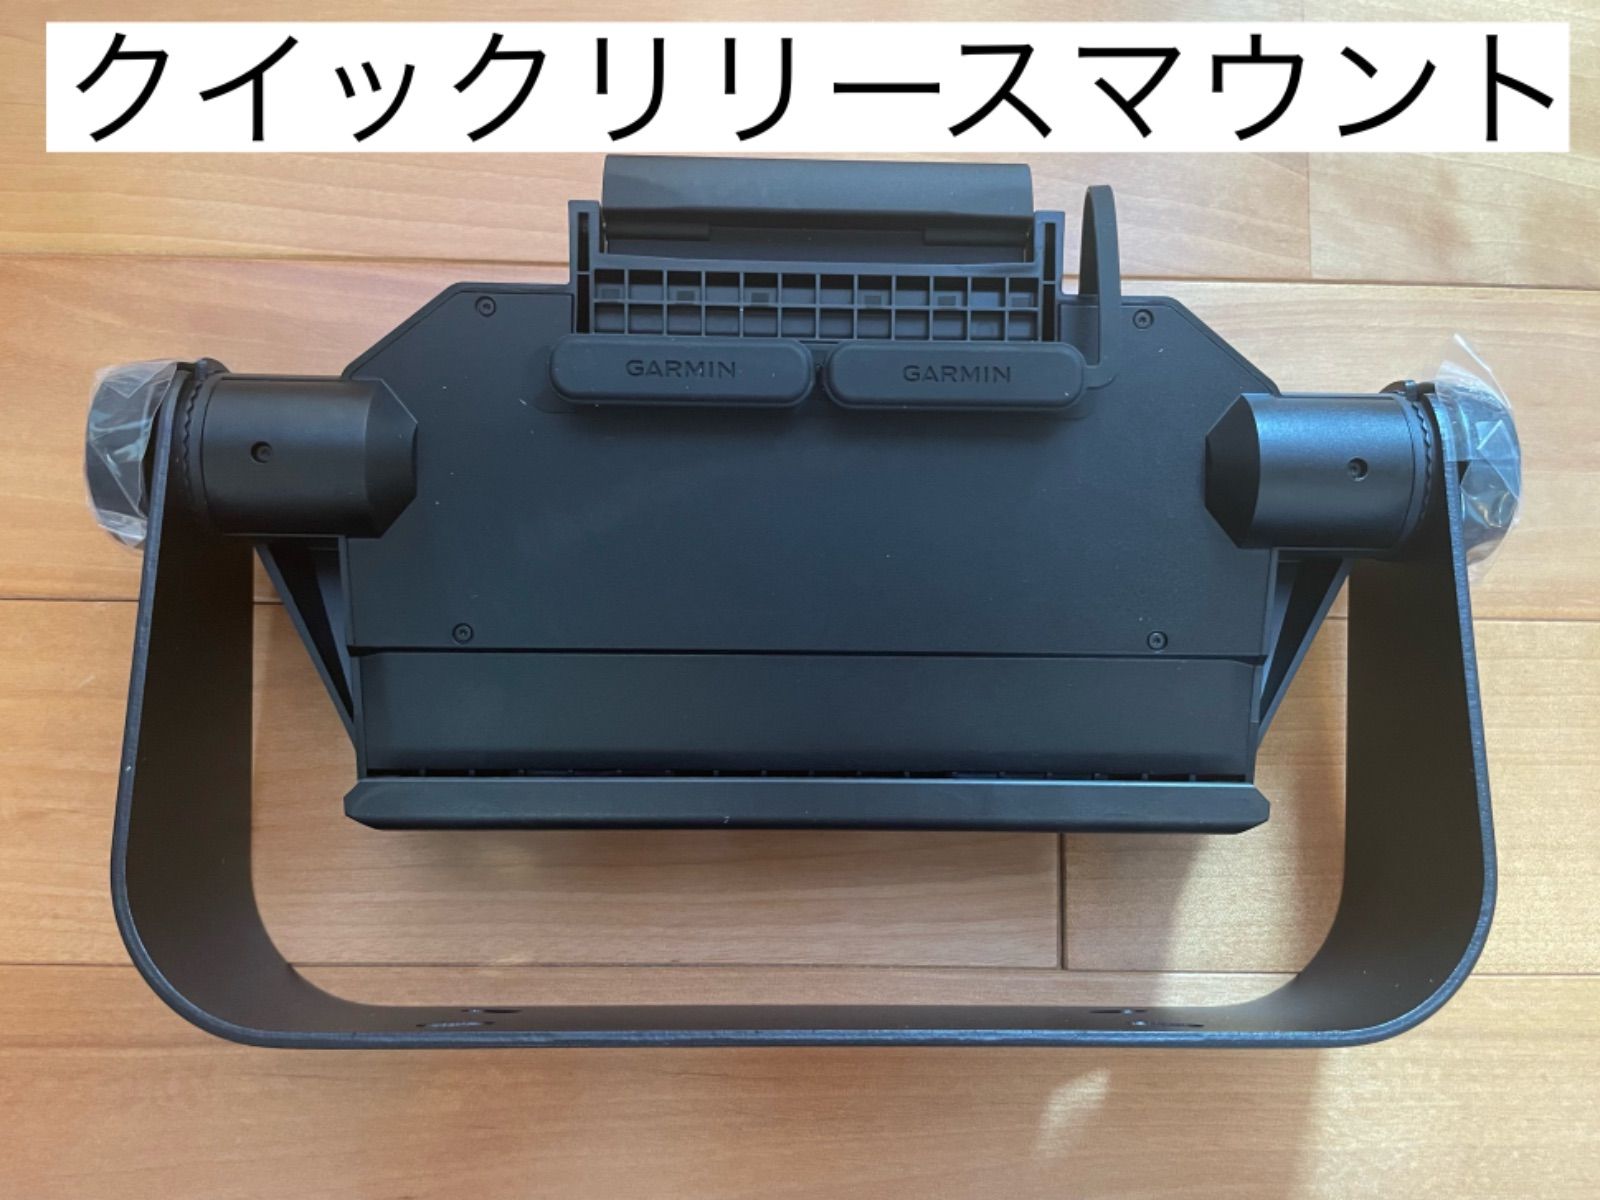 ガーミン エコマップウルトラ 12インチ+GT51M振動子セット 日本語表示可能